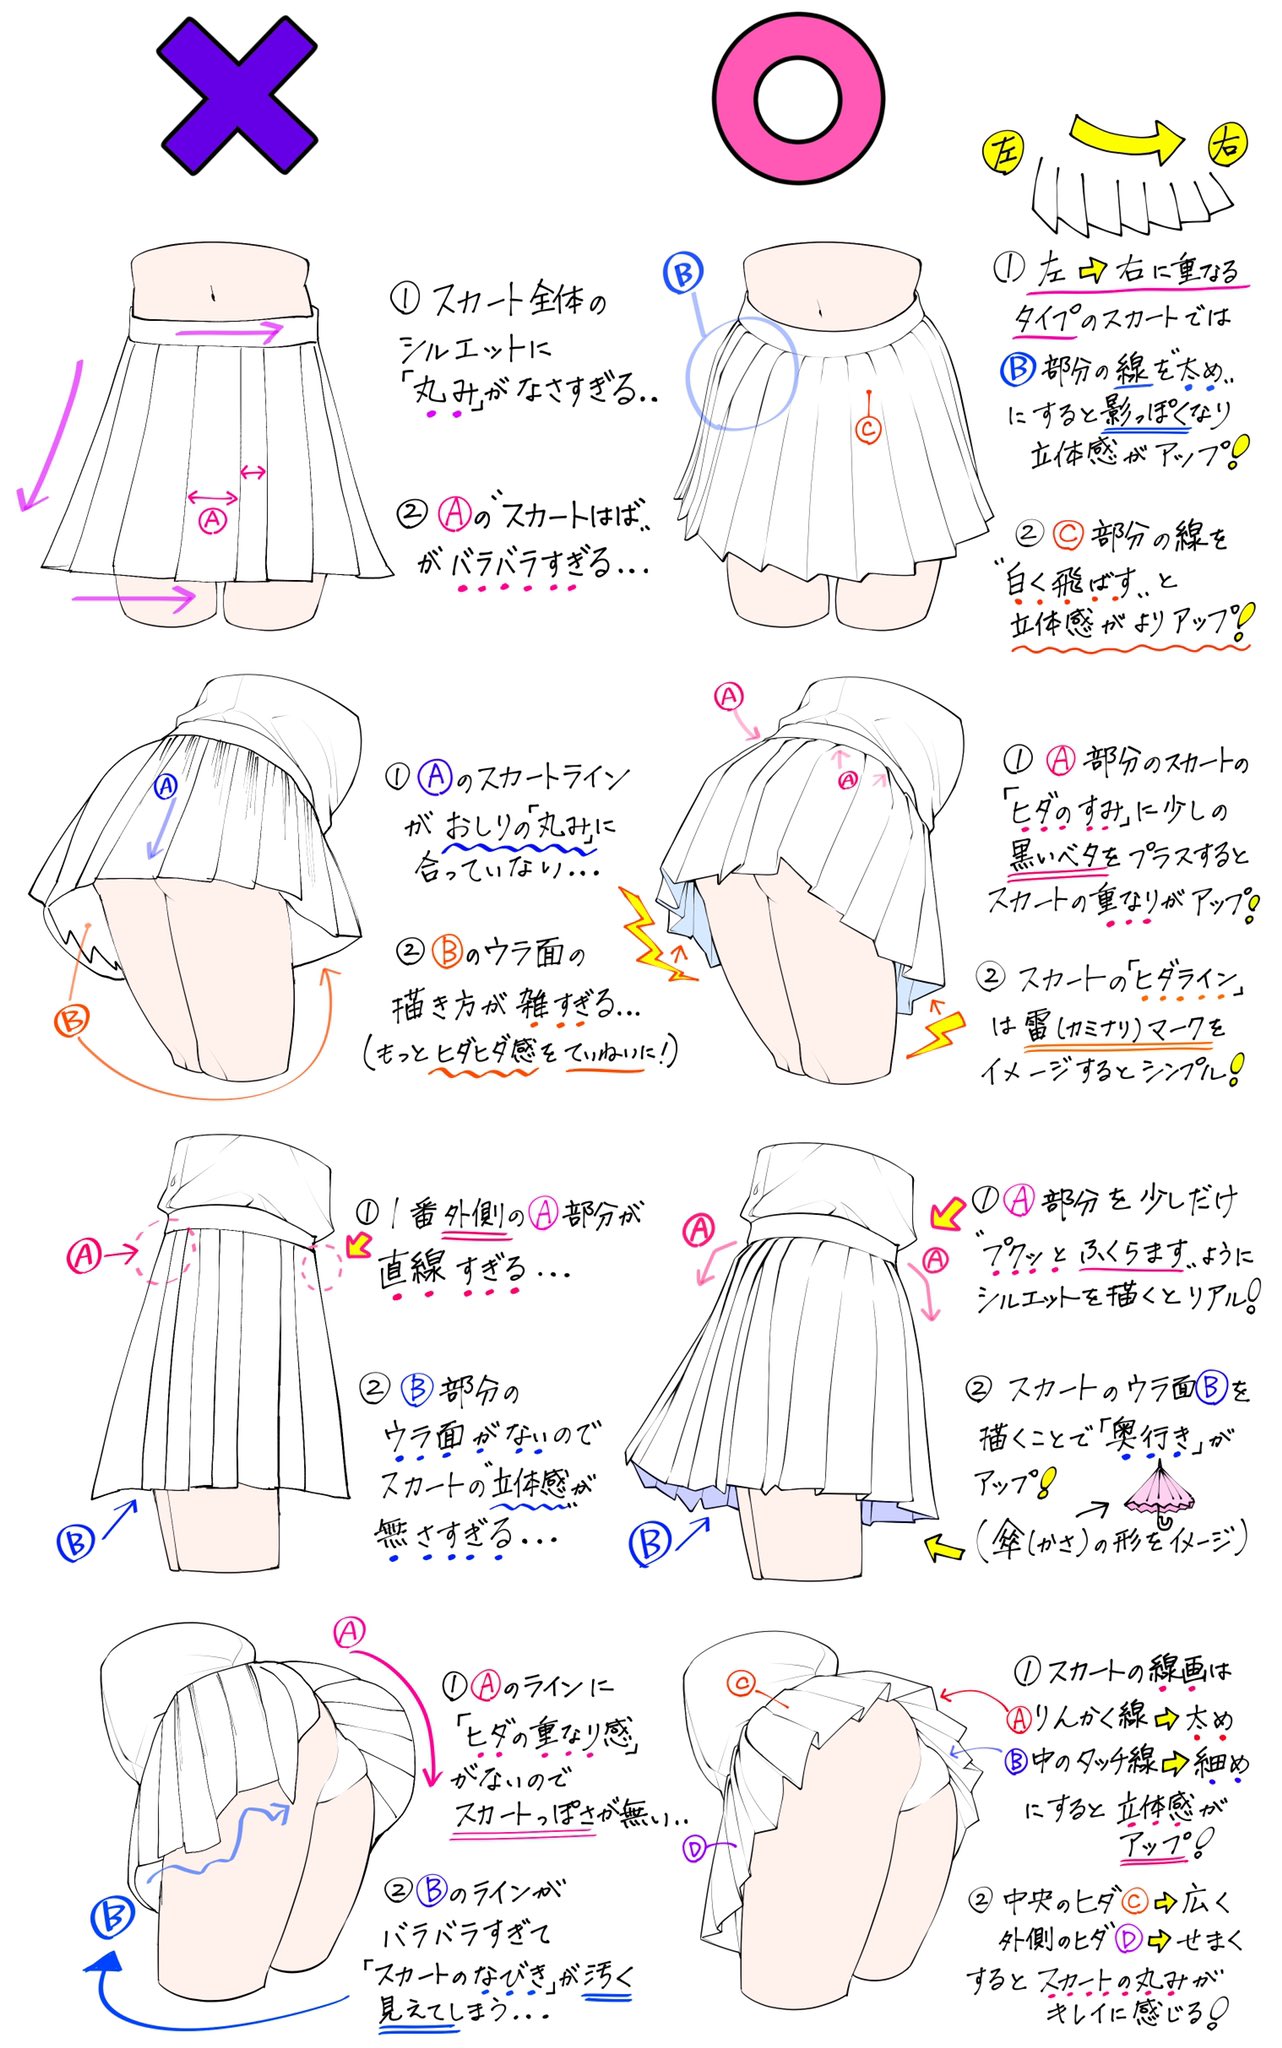 吉村拓也 イラスト講座 スカートの描き方 学生っぽいスカートが上達する ダメかも と 良いかも